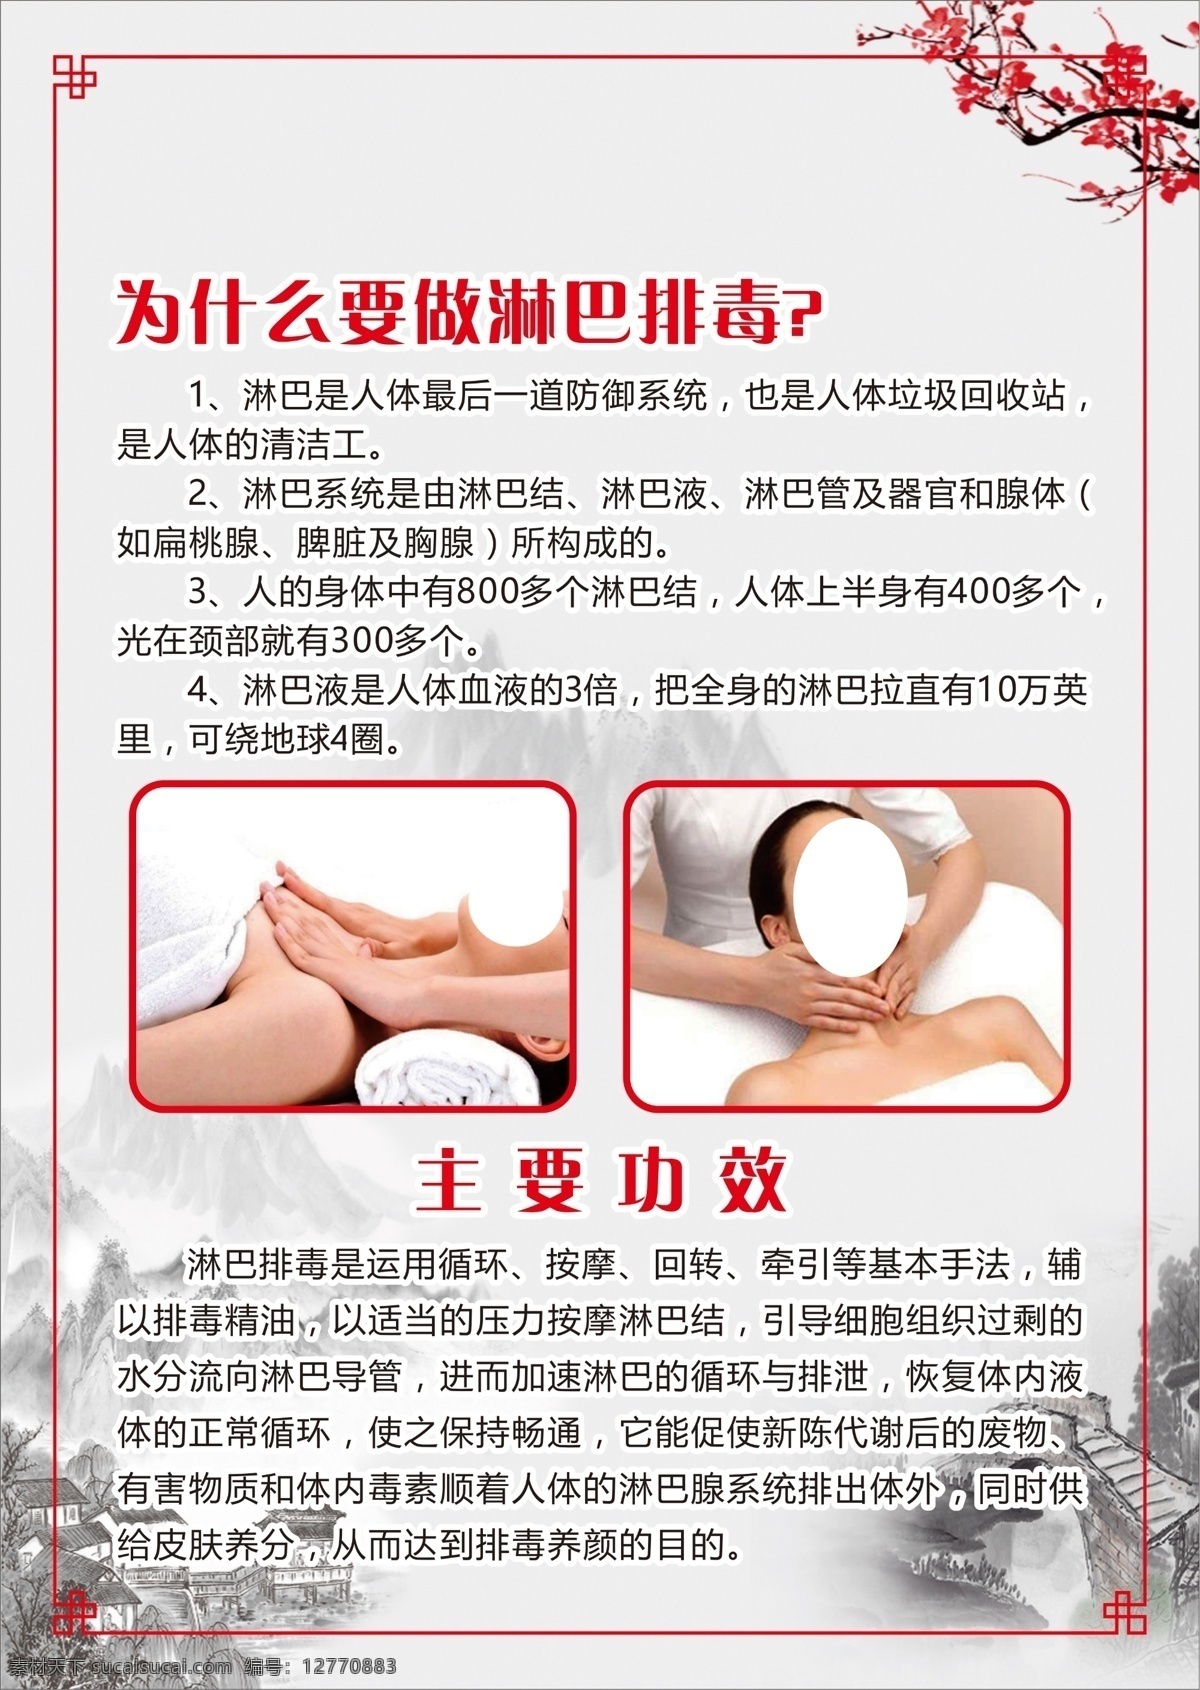 中医养生 广告 挂图 贴画 海报 身体护理 好处 功效 淋巴排毒